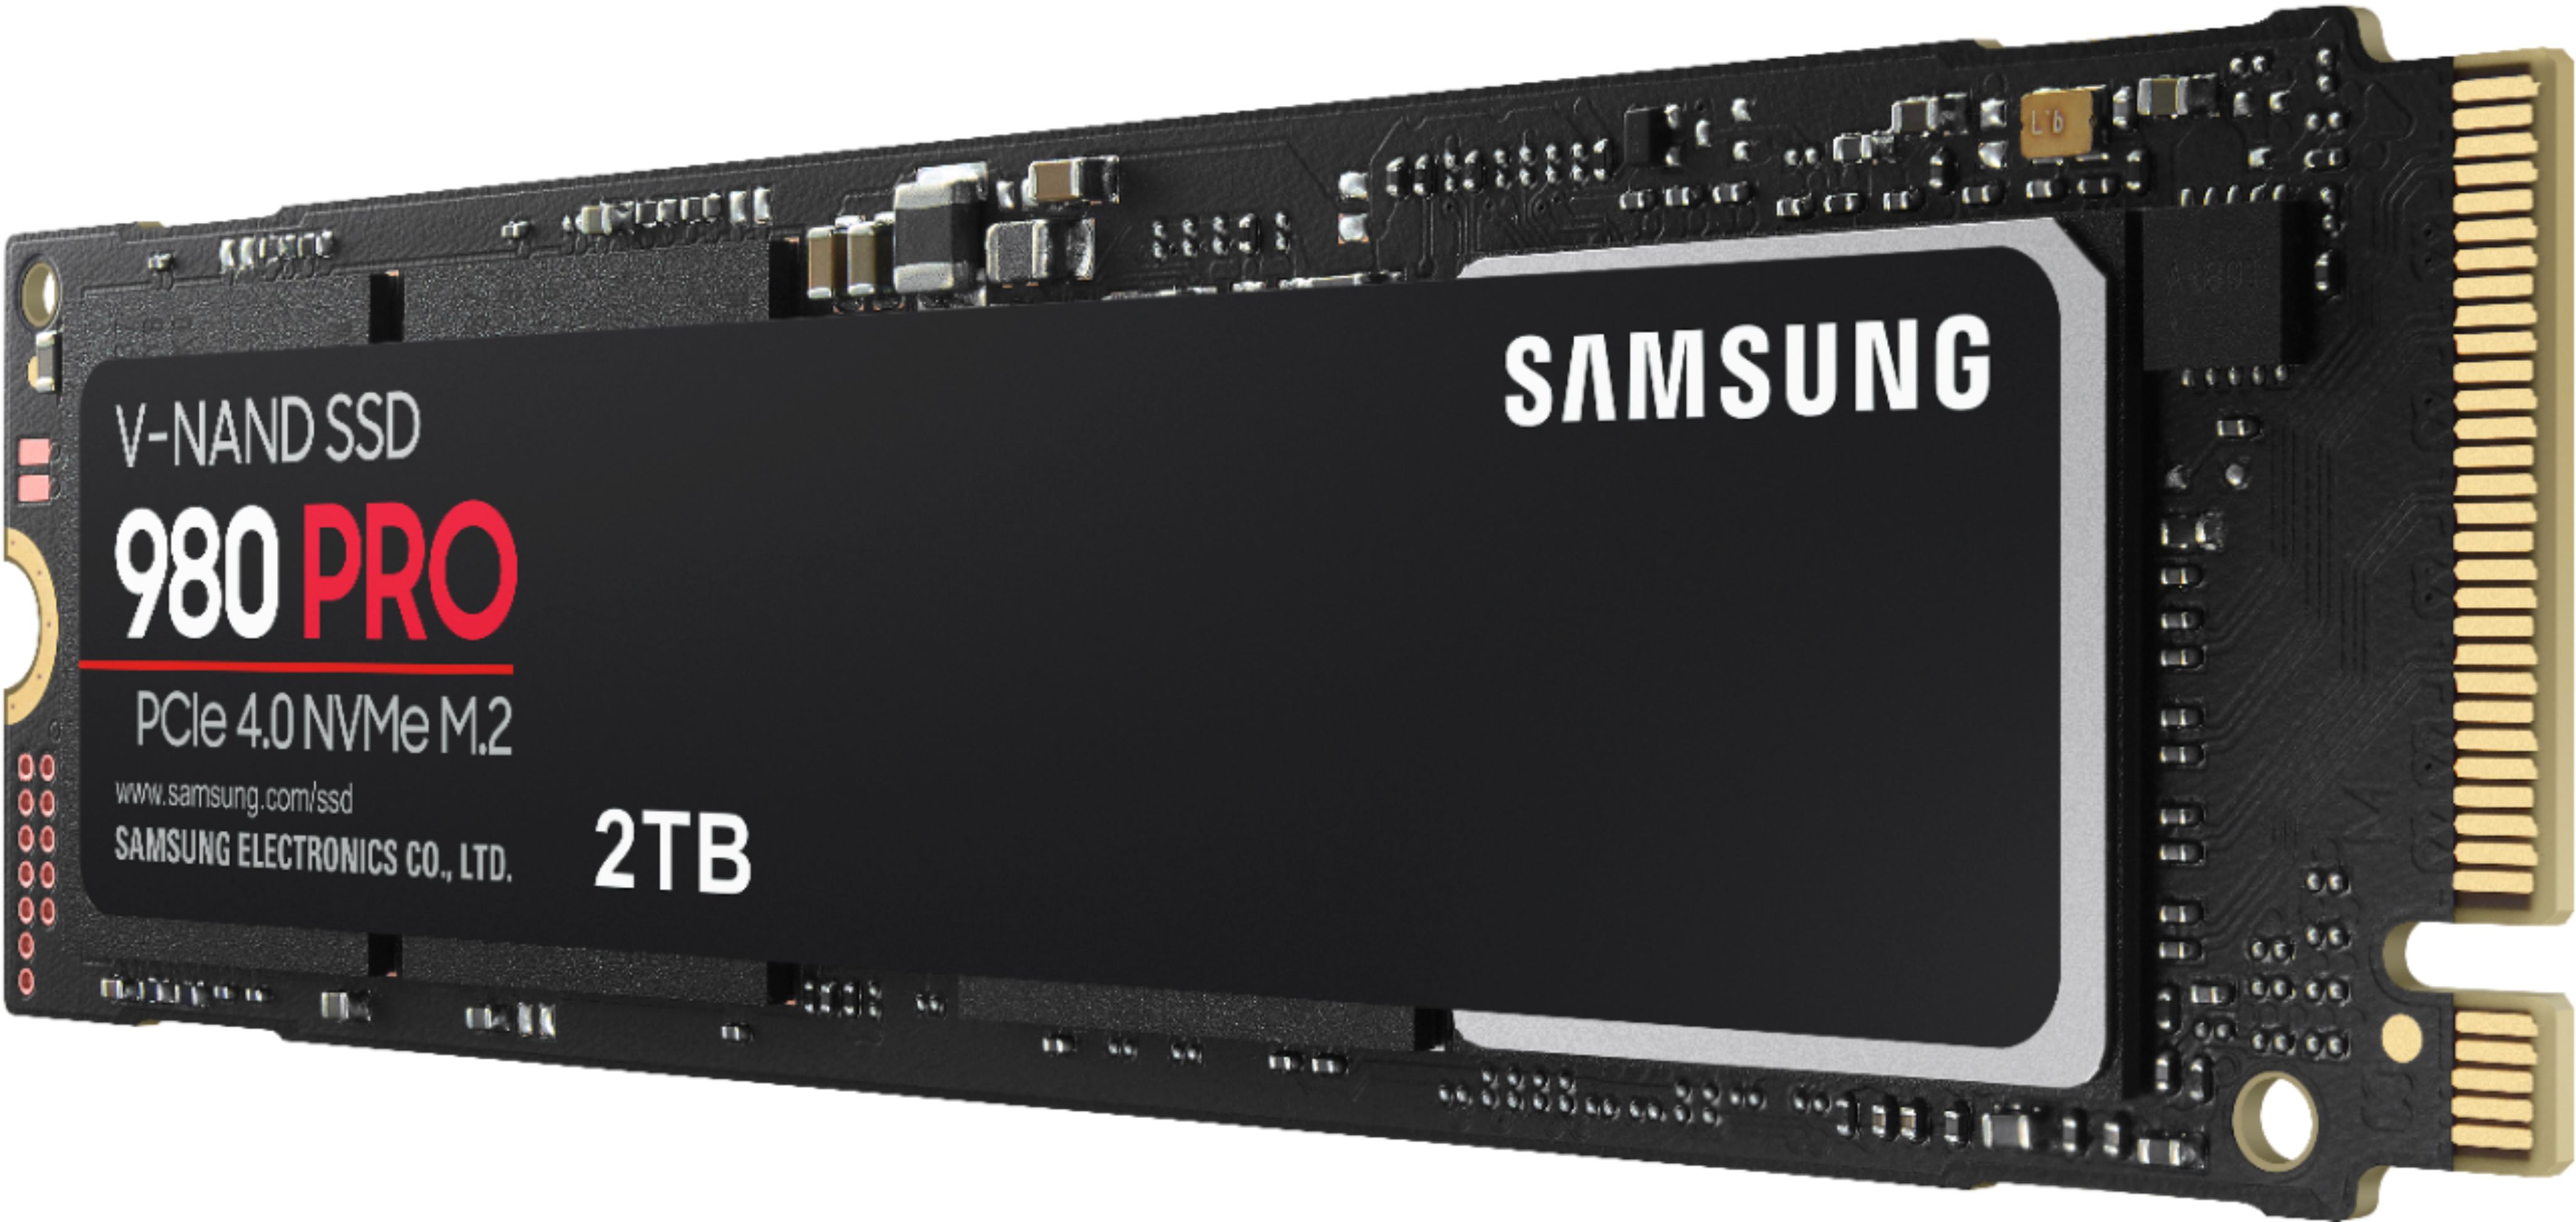 Pygmalion high take down Samsung 980 PRO 2TB Internal Gaming SSD PCIe Gen 4 x4 NVMe MZ-V8P2T0B/AM -  Best Buy